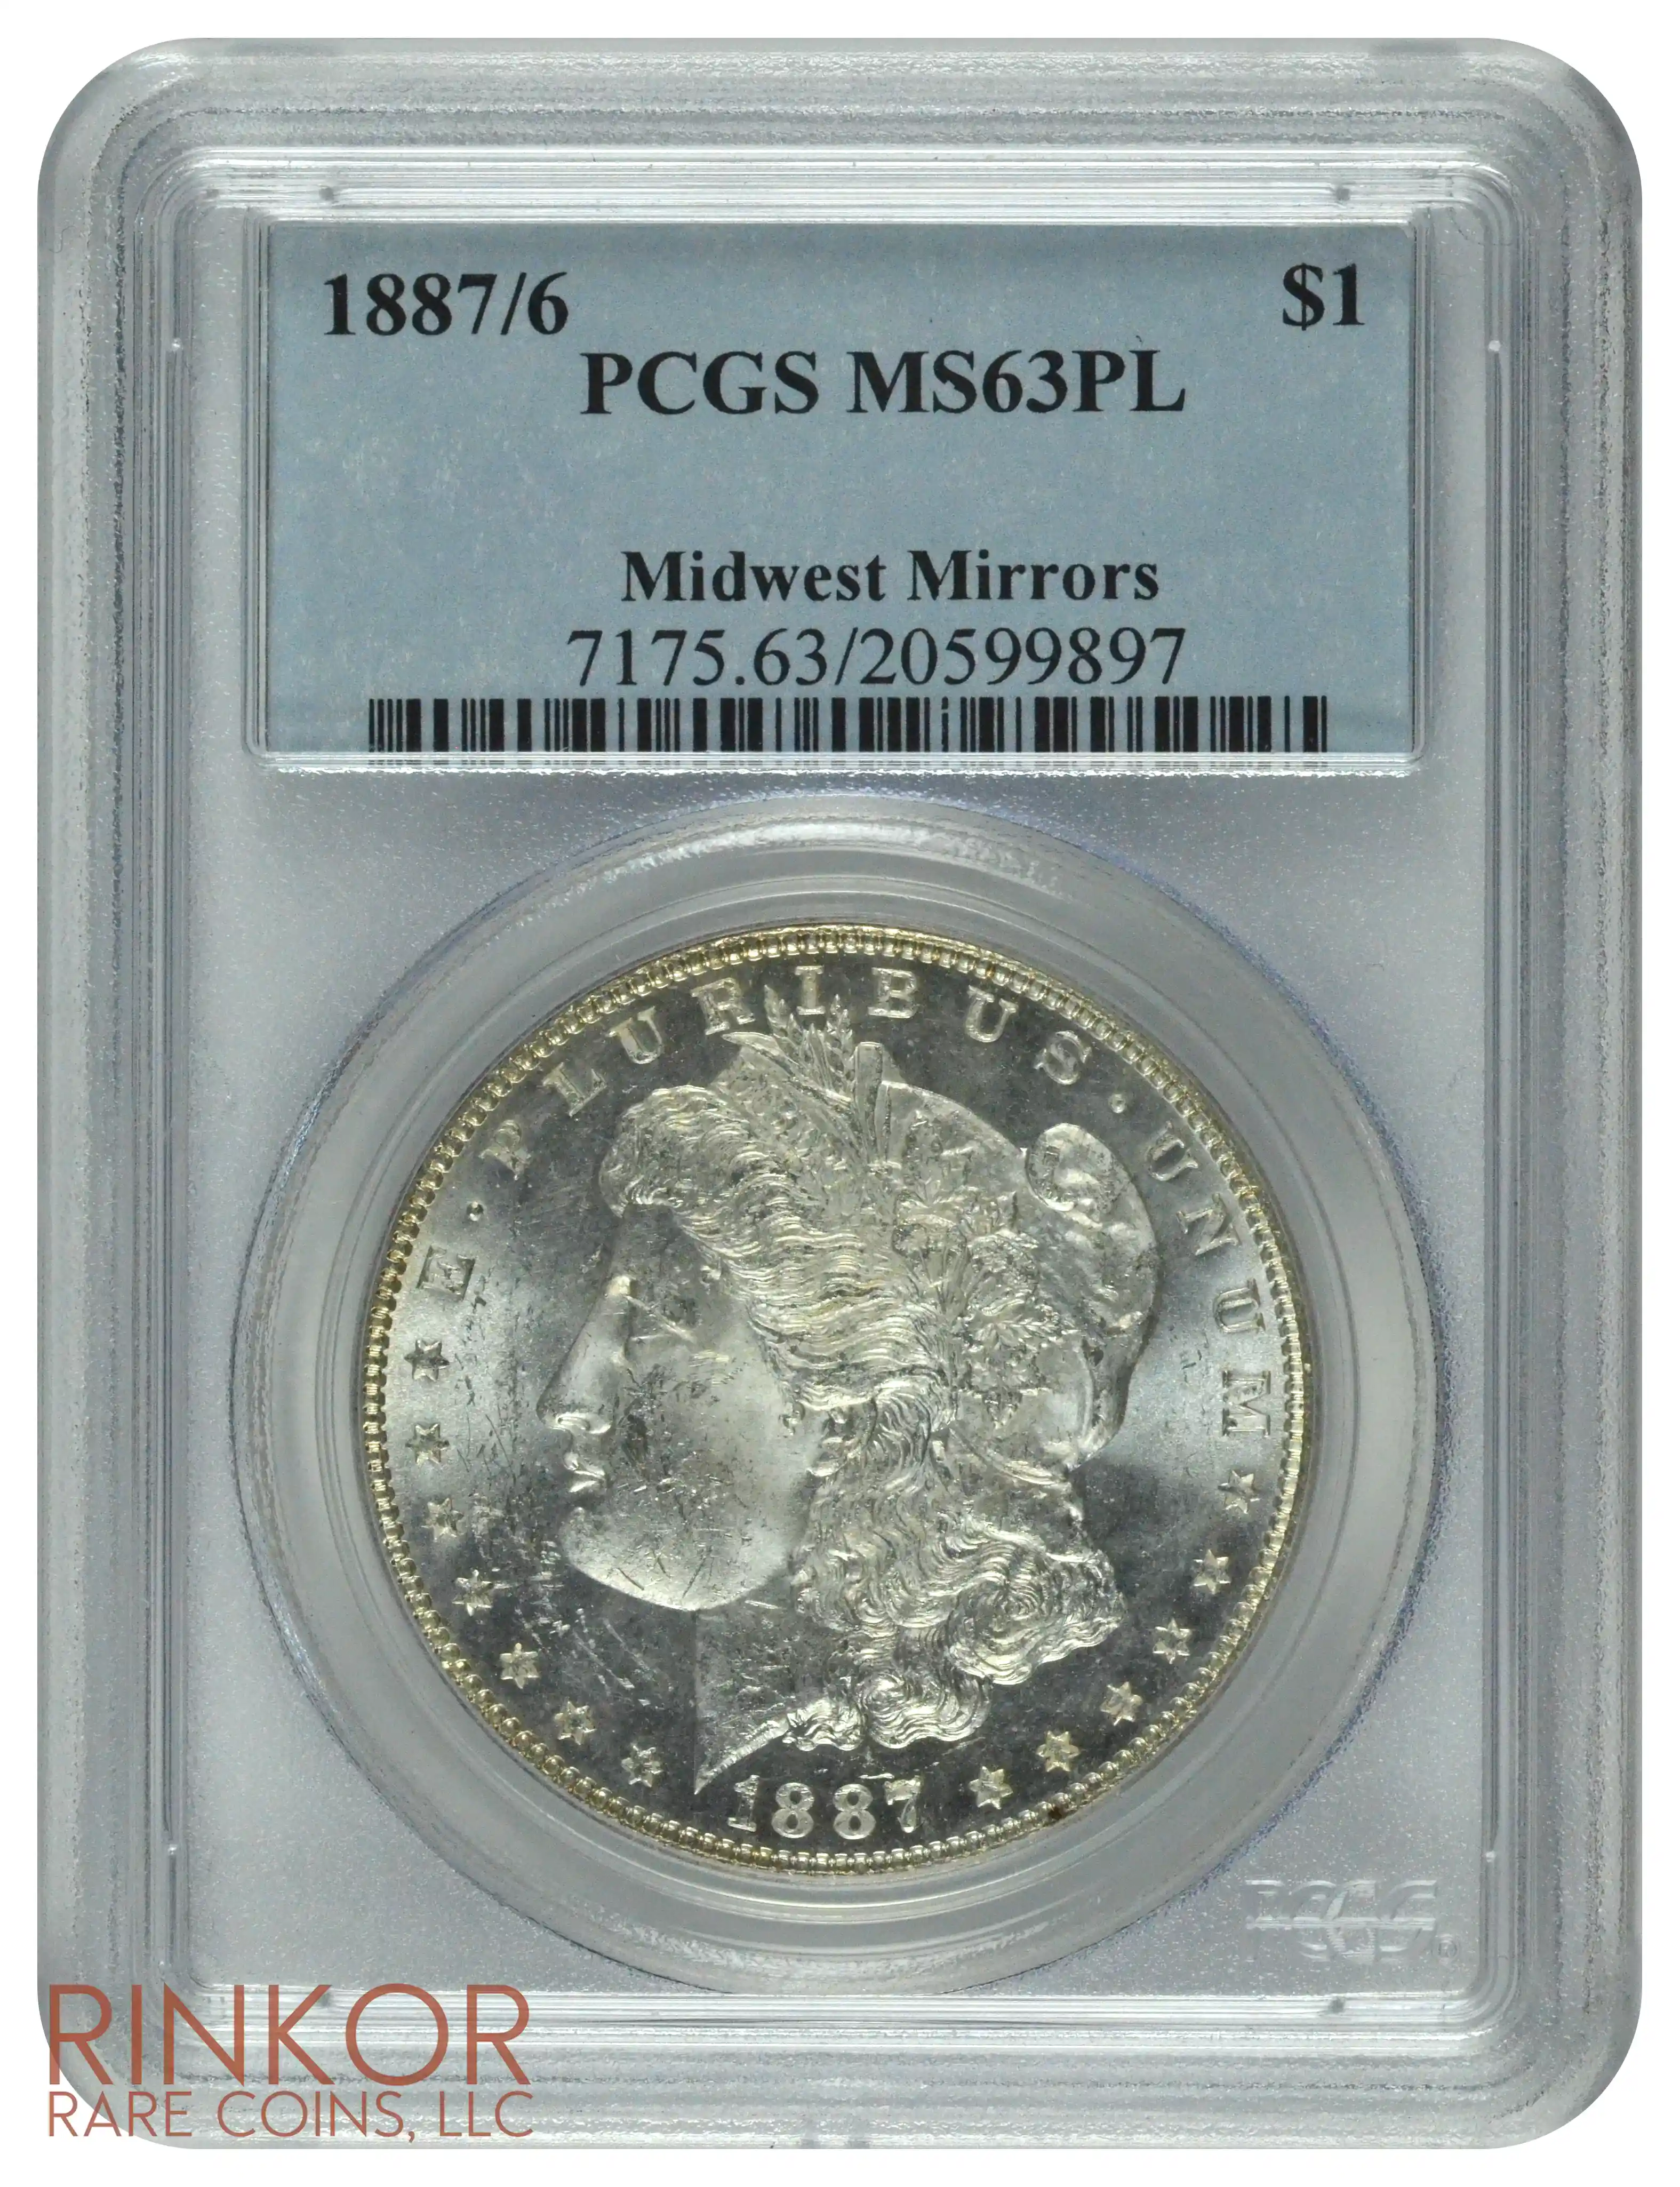 1887/6 $1 PCGS MS 63 PL